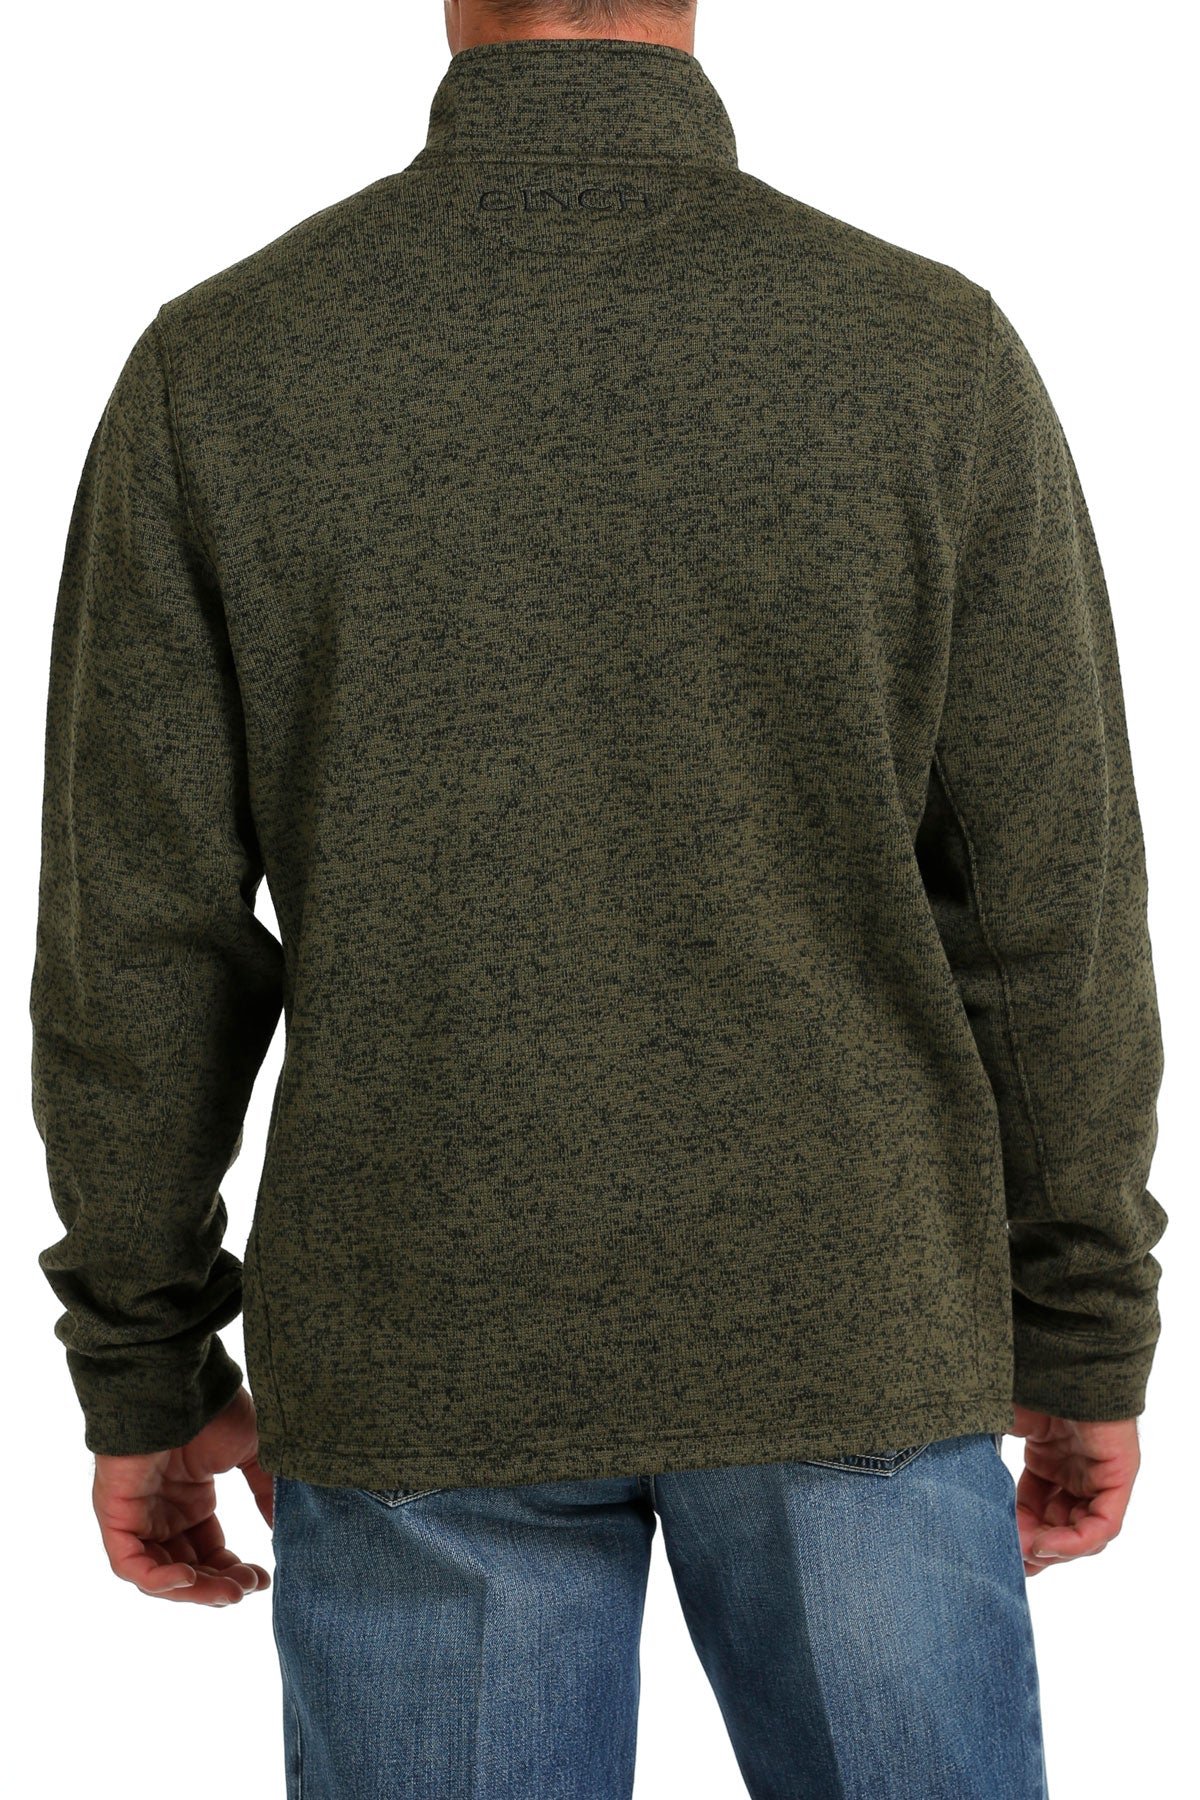 Cinch 1/4 Zip Sweater [olive]